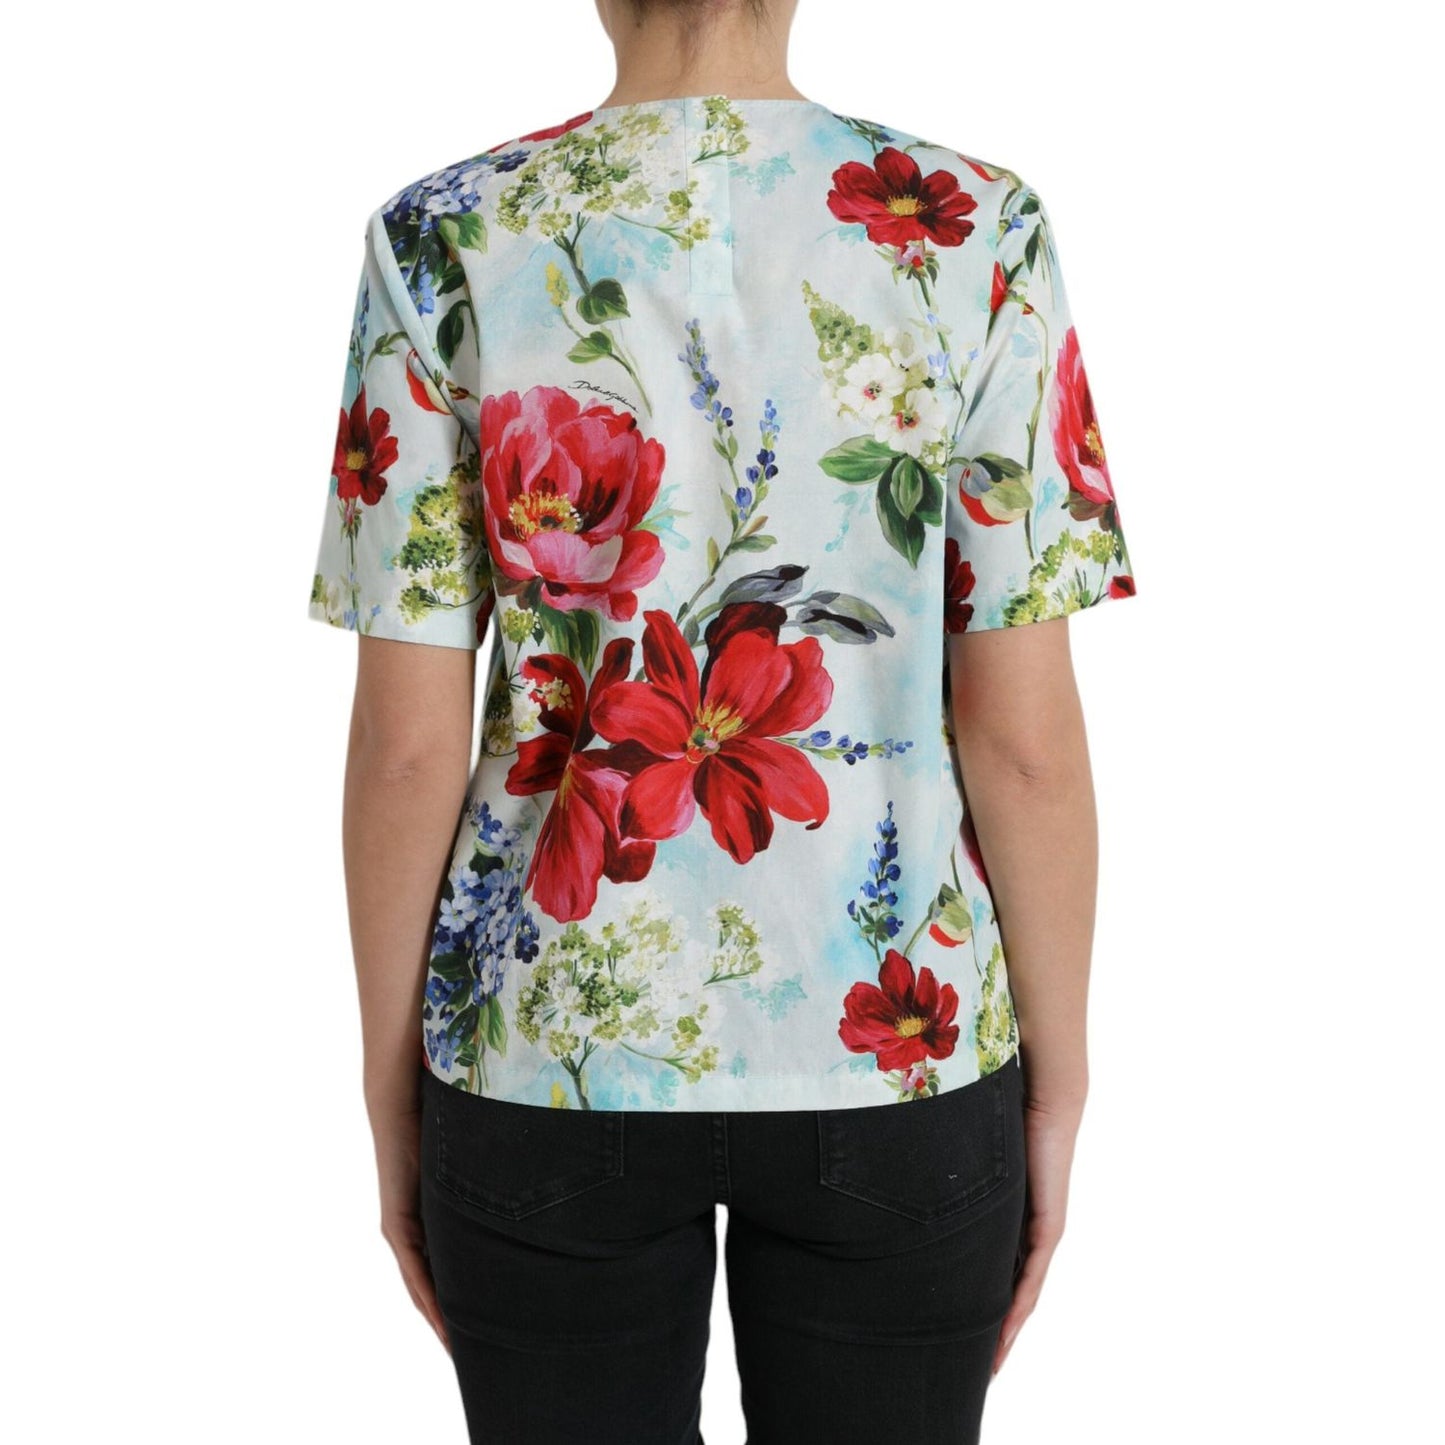 Dolce & Gabbana Chic Floral Round Neck Cotton Top multicolor-floral-cotton-round-neck-blouse-top